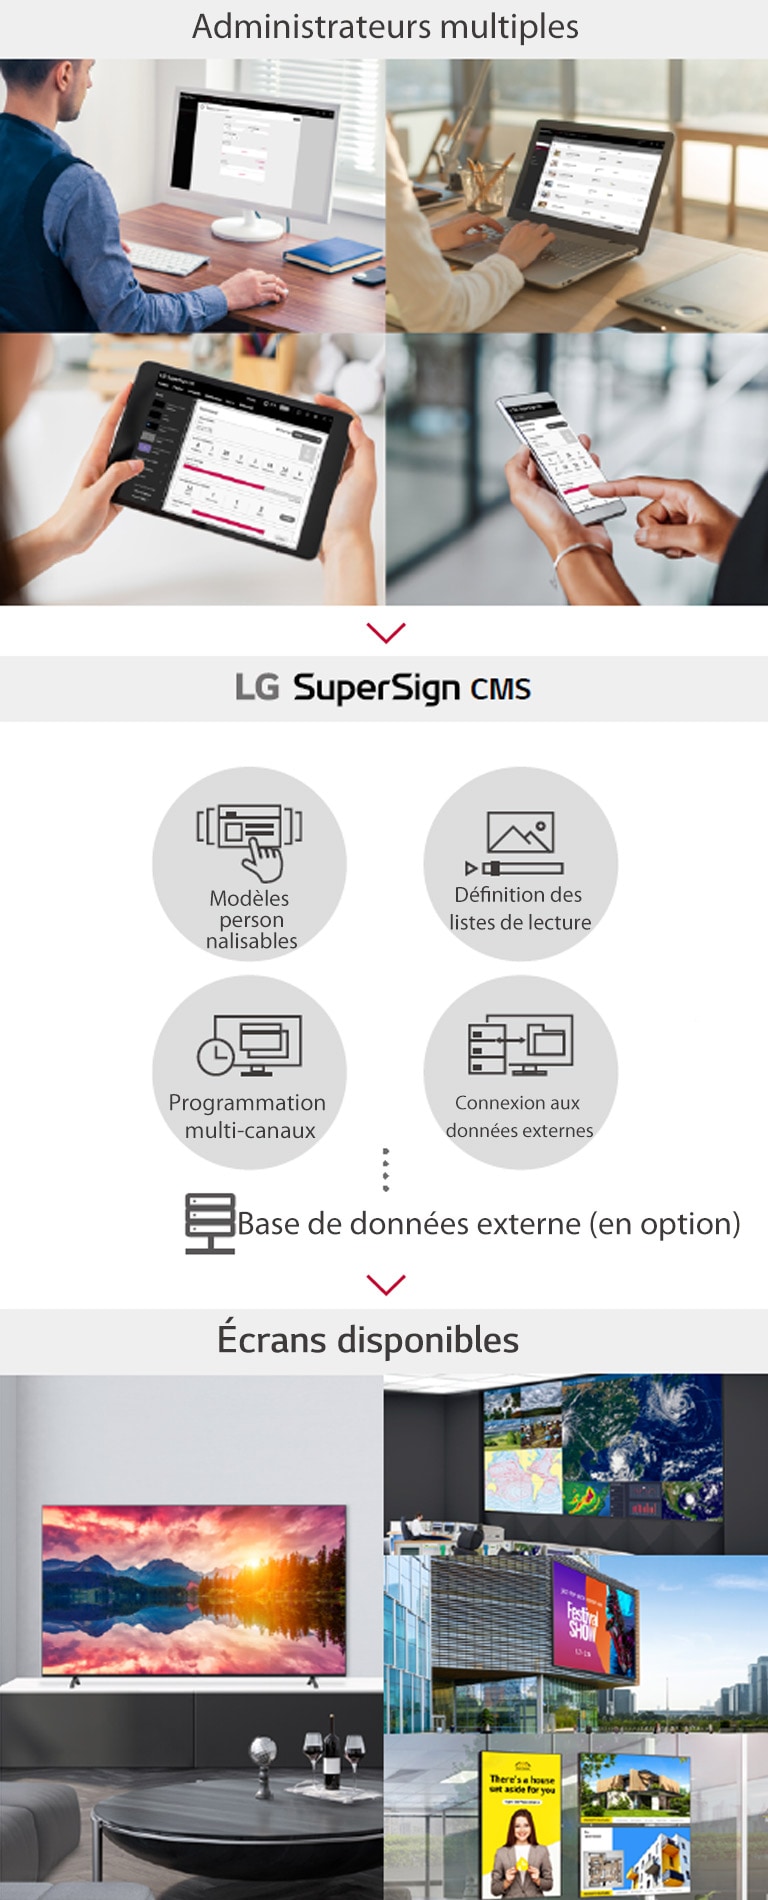 Plusieurs administrateurs peuvent accéder au LG SuperSign CMS par le biais d’un PC, d’un ordinateur portable, d’une tablette et de dispositifs mobiles en vue de créer, réguler et distribuer du contenu multimédia numérique adapté à une gamme variée d’écrans.